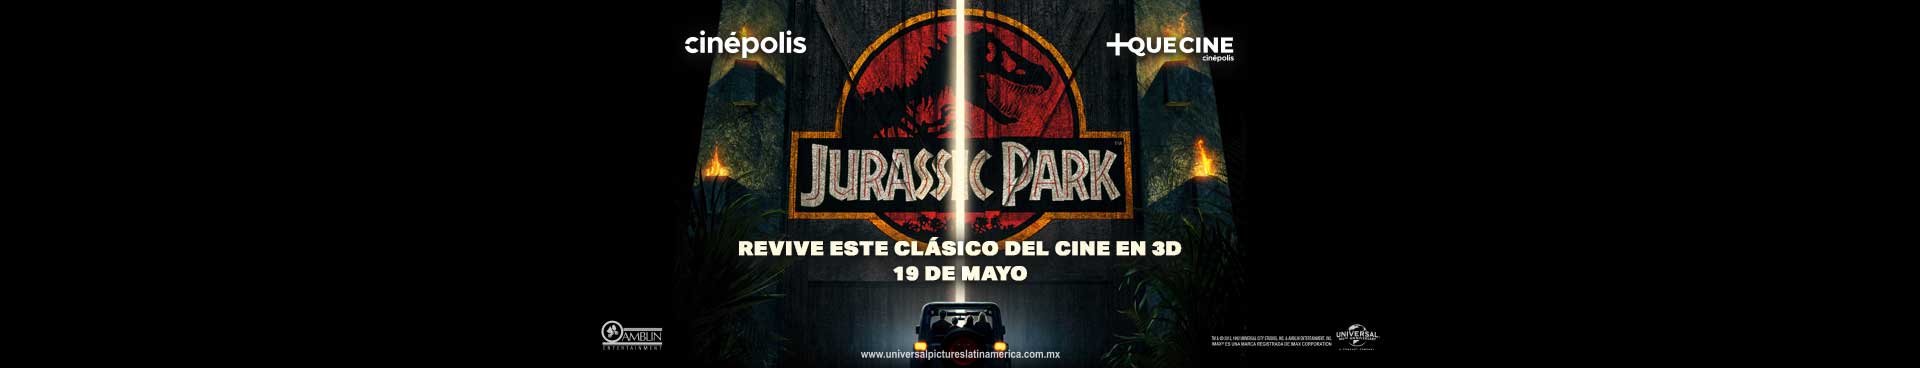 Re-estreno Jurasic Park 3D